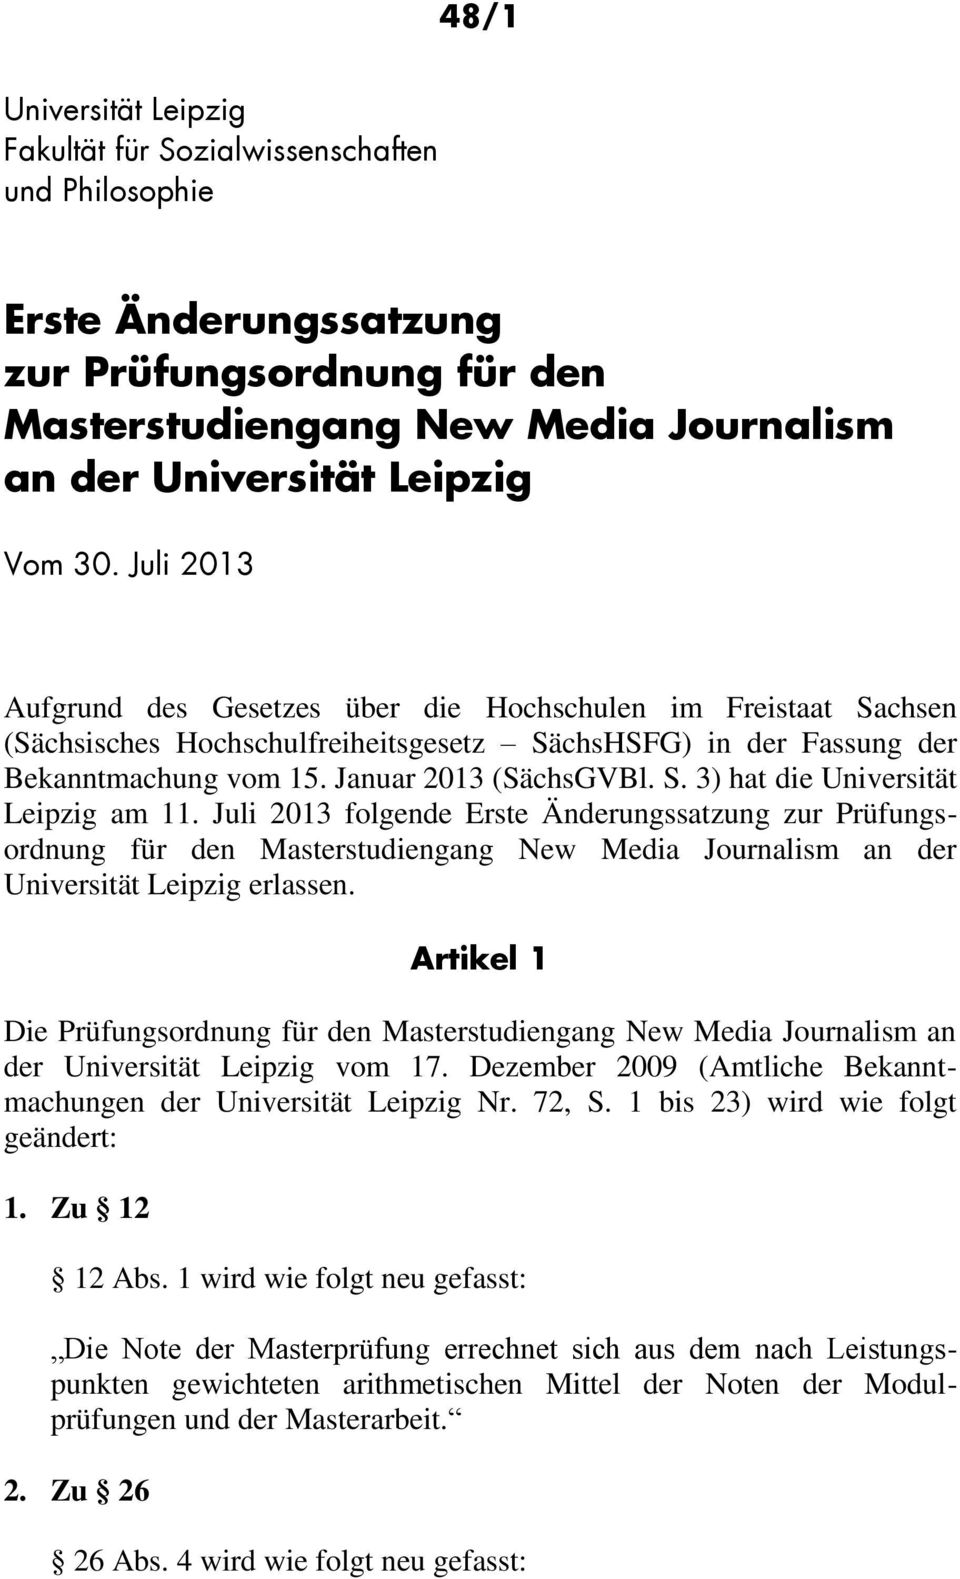 Juli 203 folgende Erste Änderungssatzung zur Prüfungsordnung für den Masterstudiengang New Media Journalism an der Universität Leipzig erlassen.